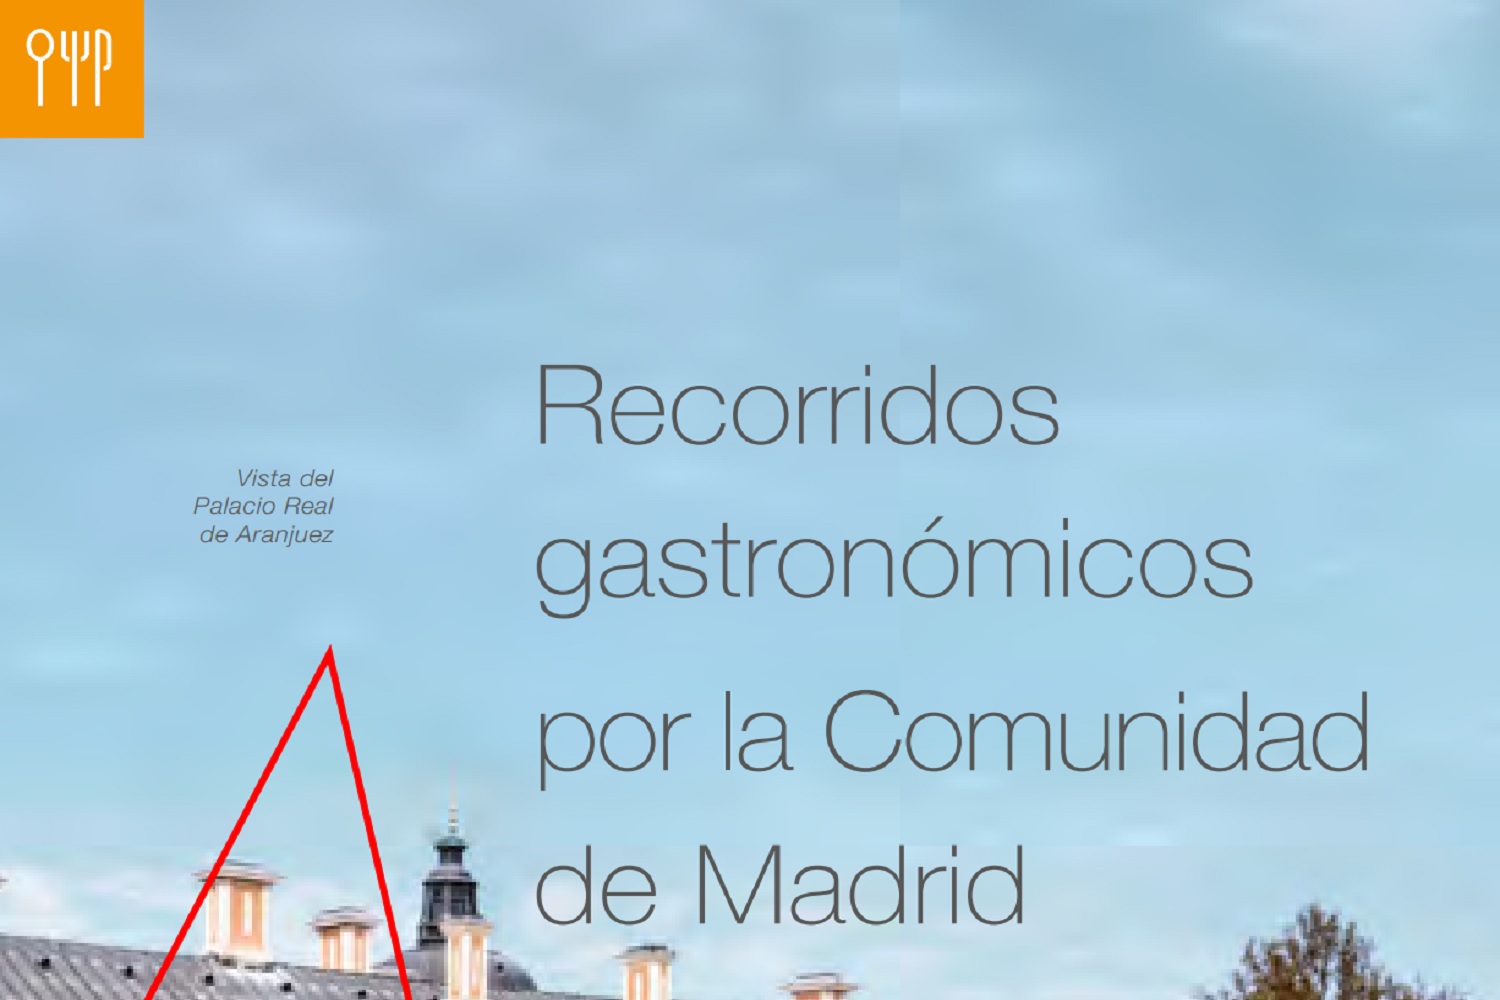 Recorridos gastronómicos por la Comunidad de Madrid